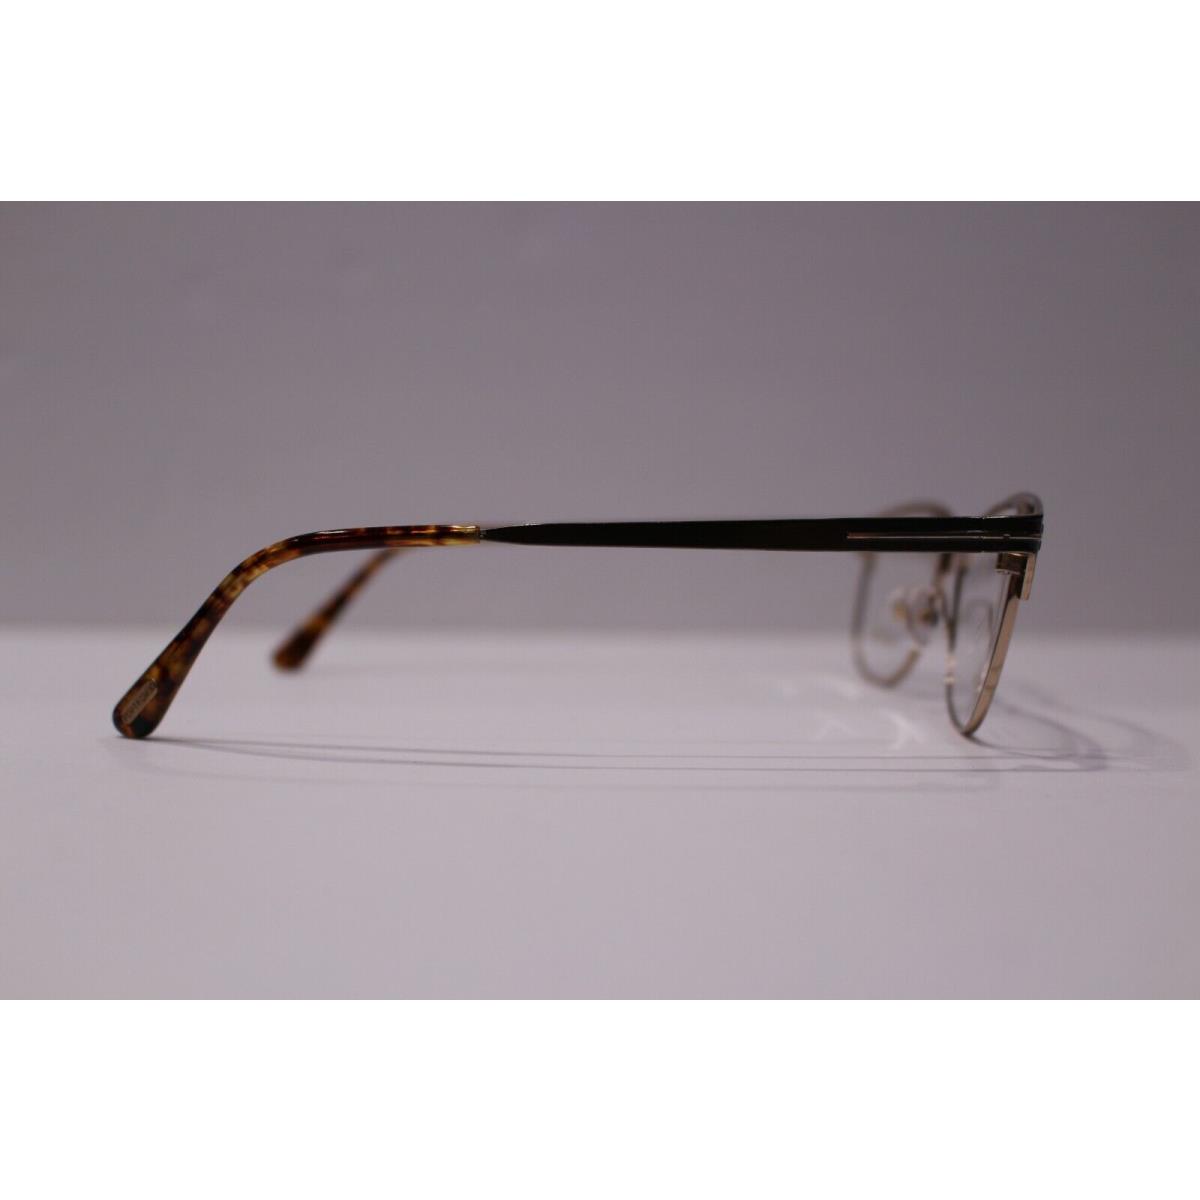 Tom Ford eyeglasses  - Metallic Brown/Light Havana Frame 3